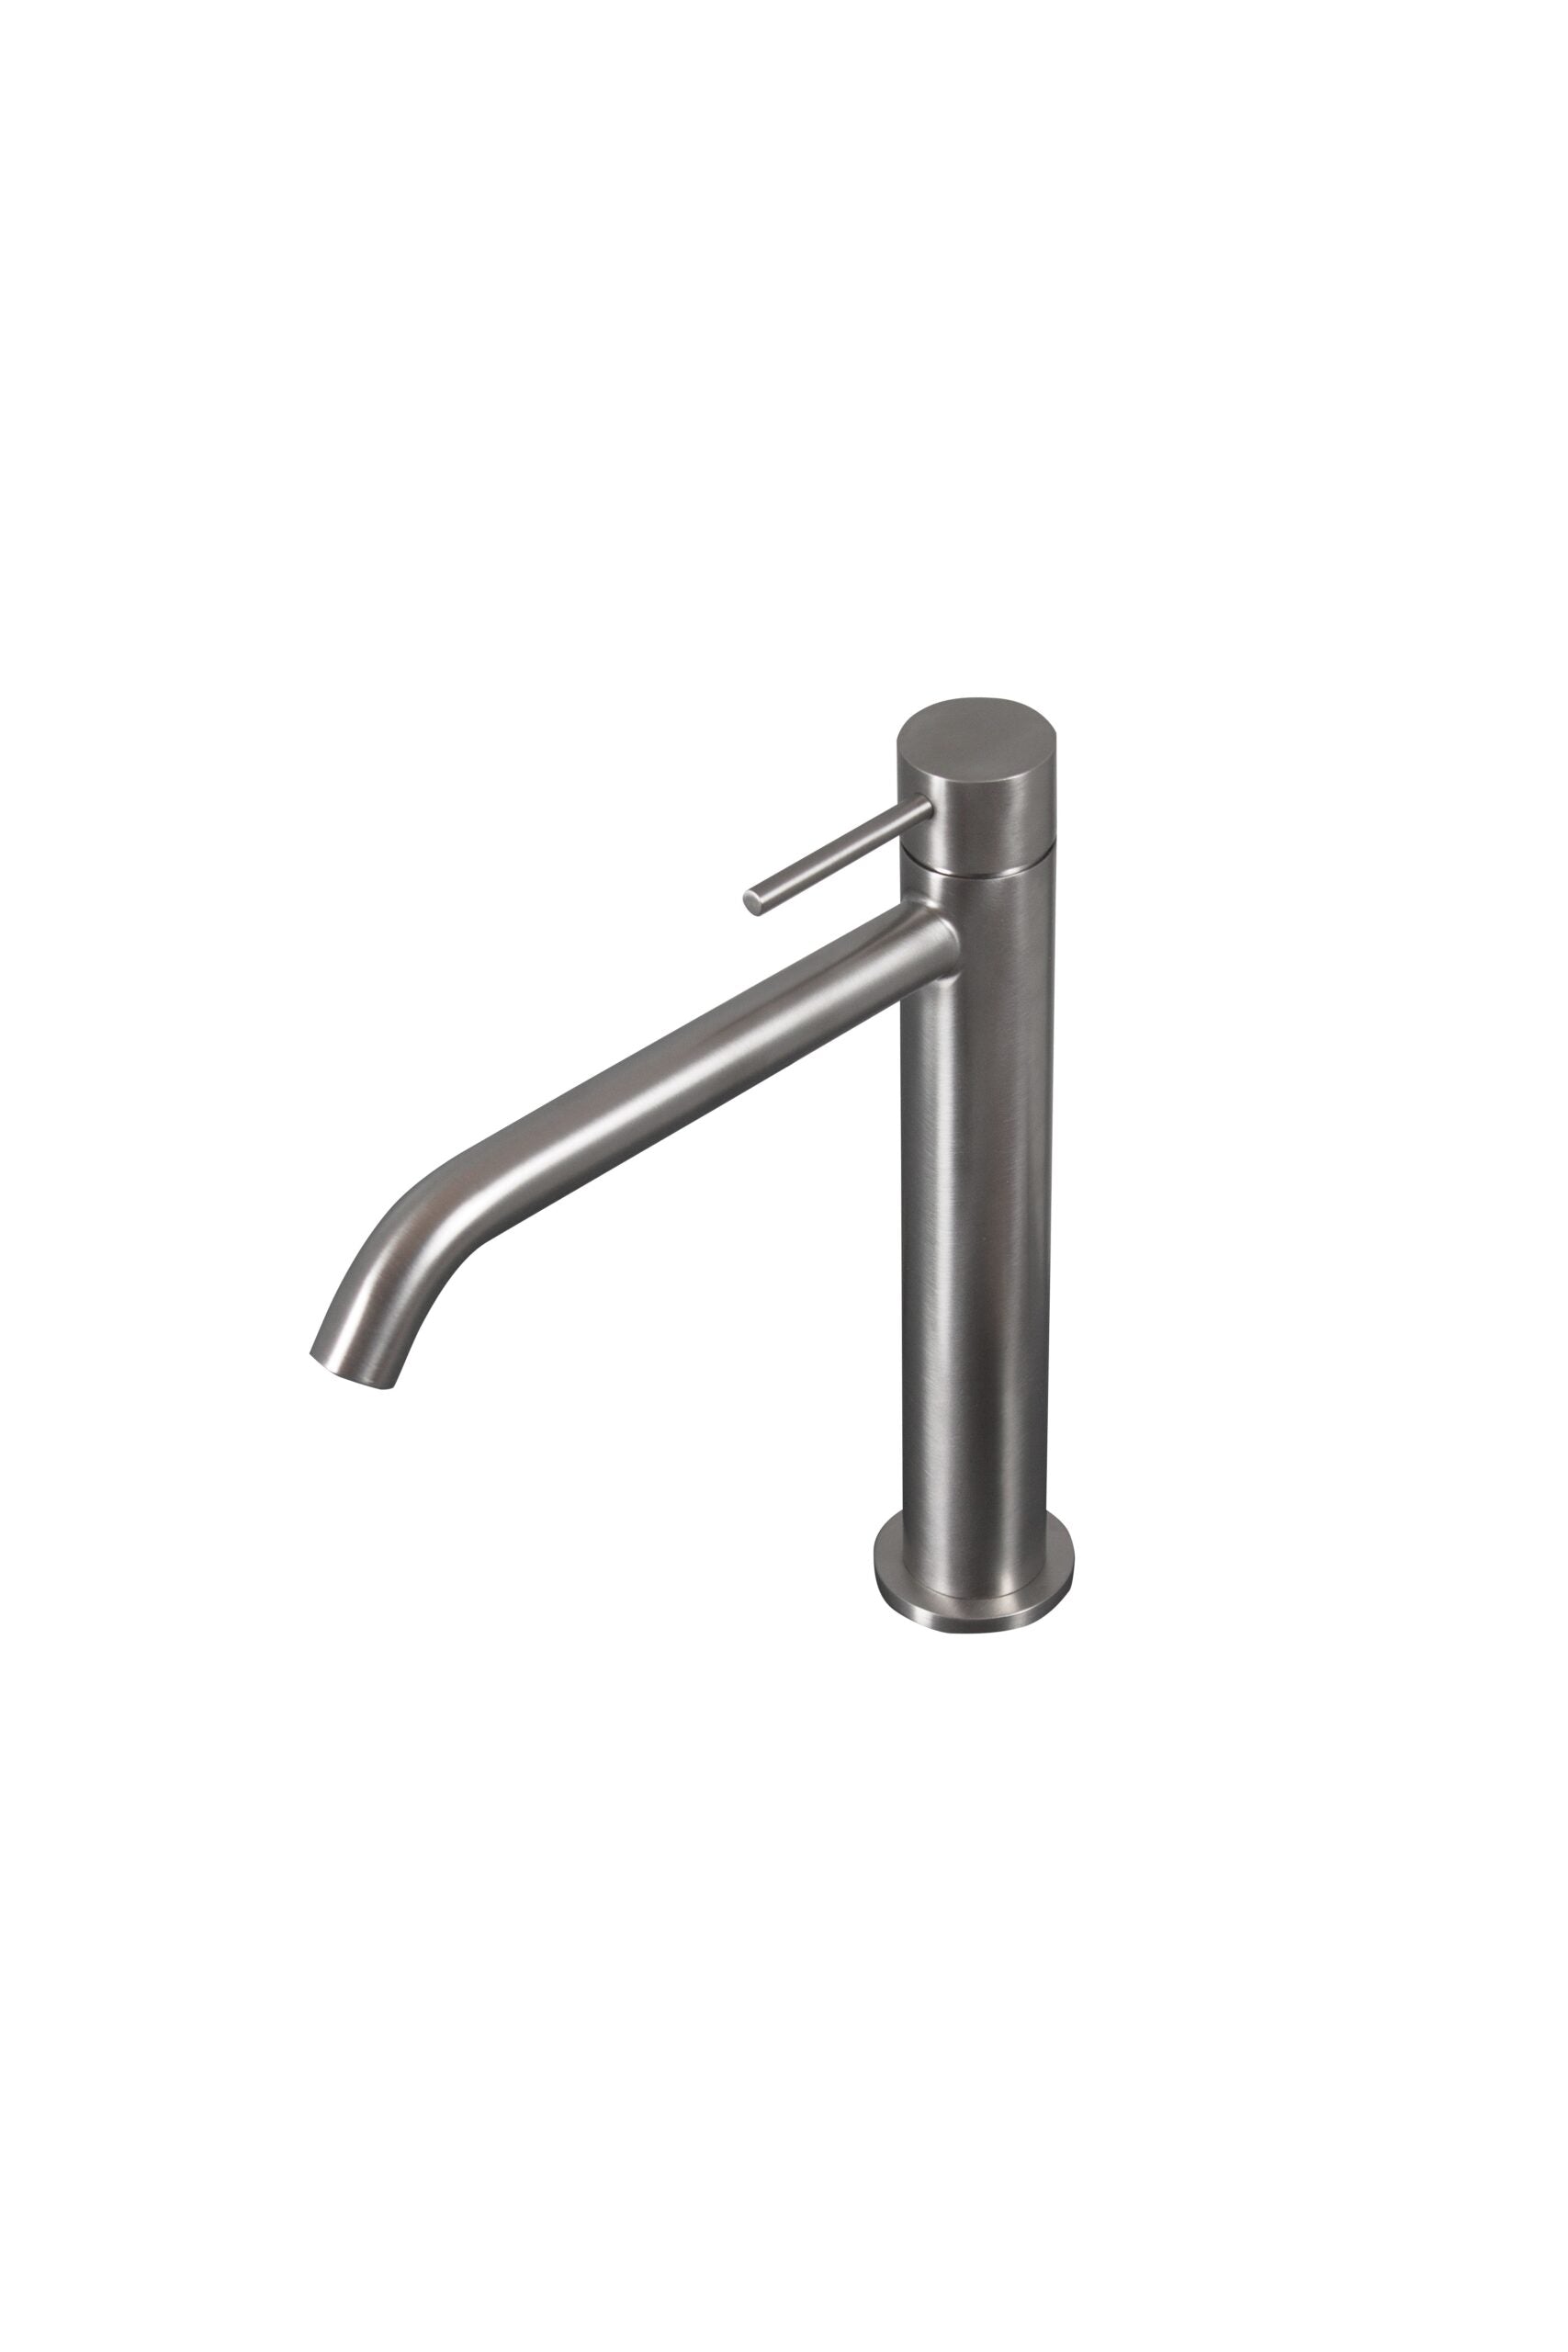 Tubico Tevere rubinetto miscelatore alto per lavabo in acciaio inox 316L oro Made in Italy T44166G